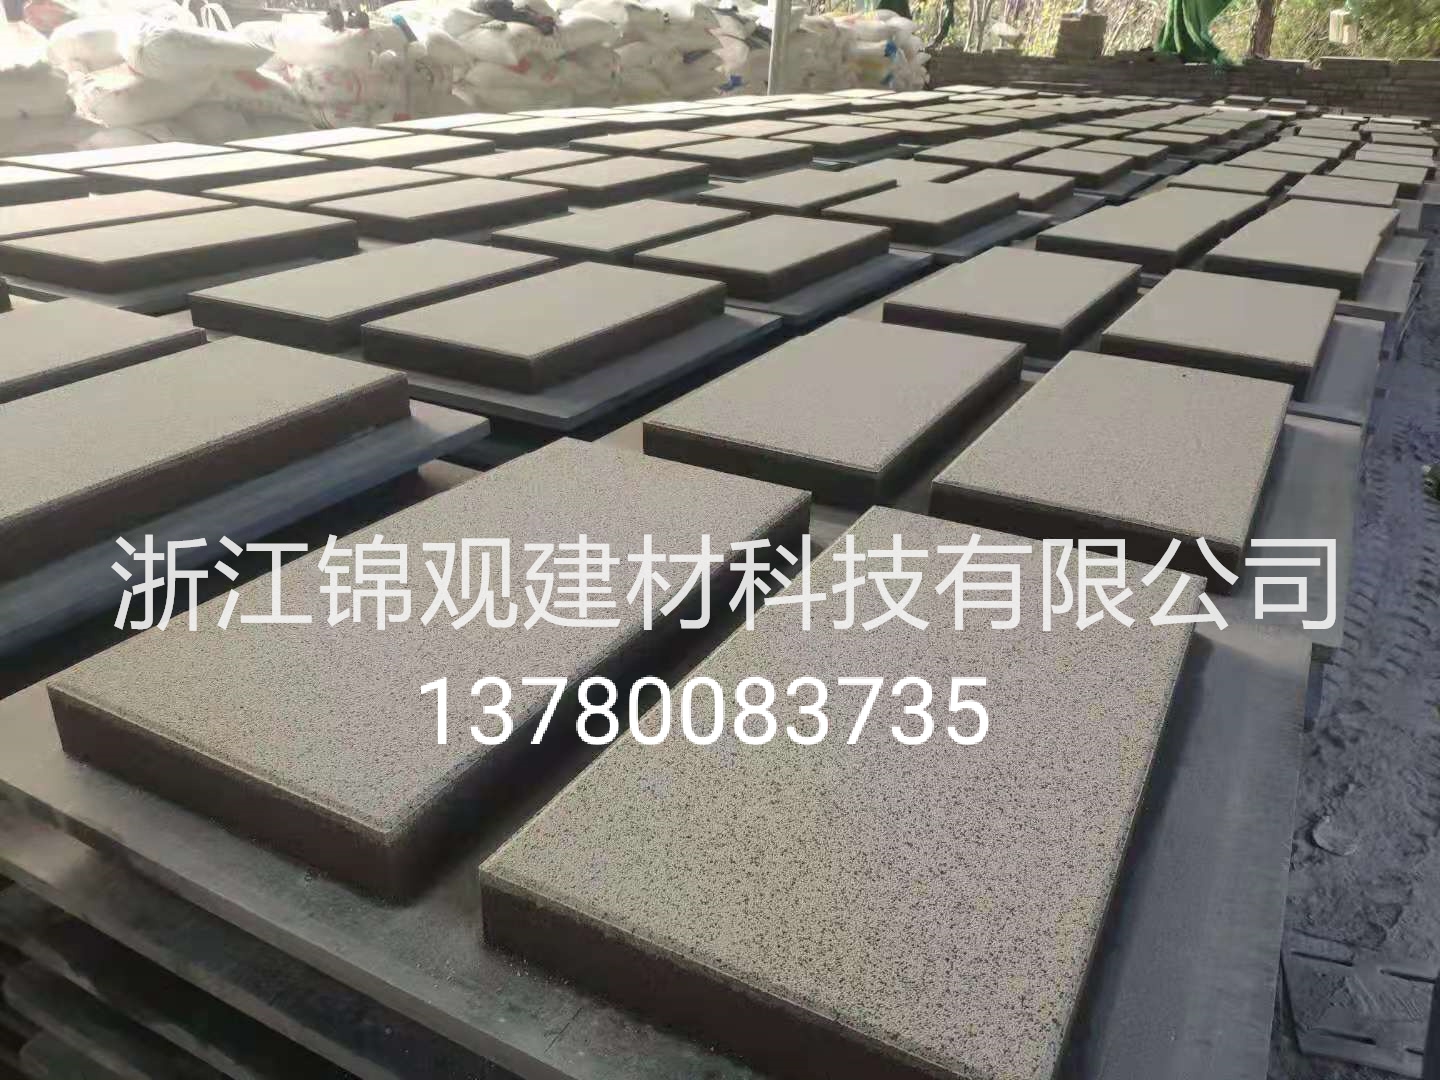 浙江锦观建材仿石材混凝土透水砖600x300x55供应厂家